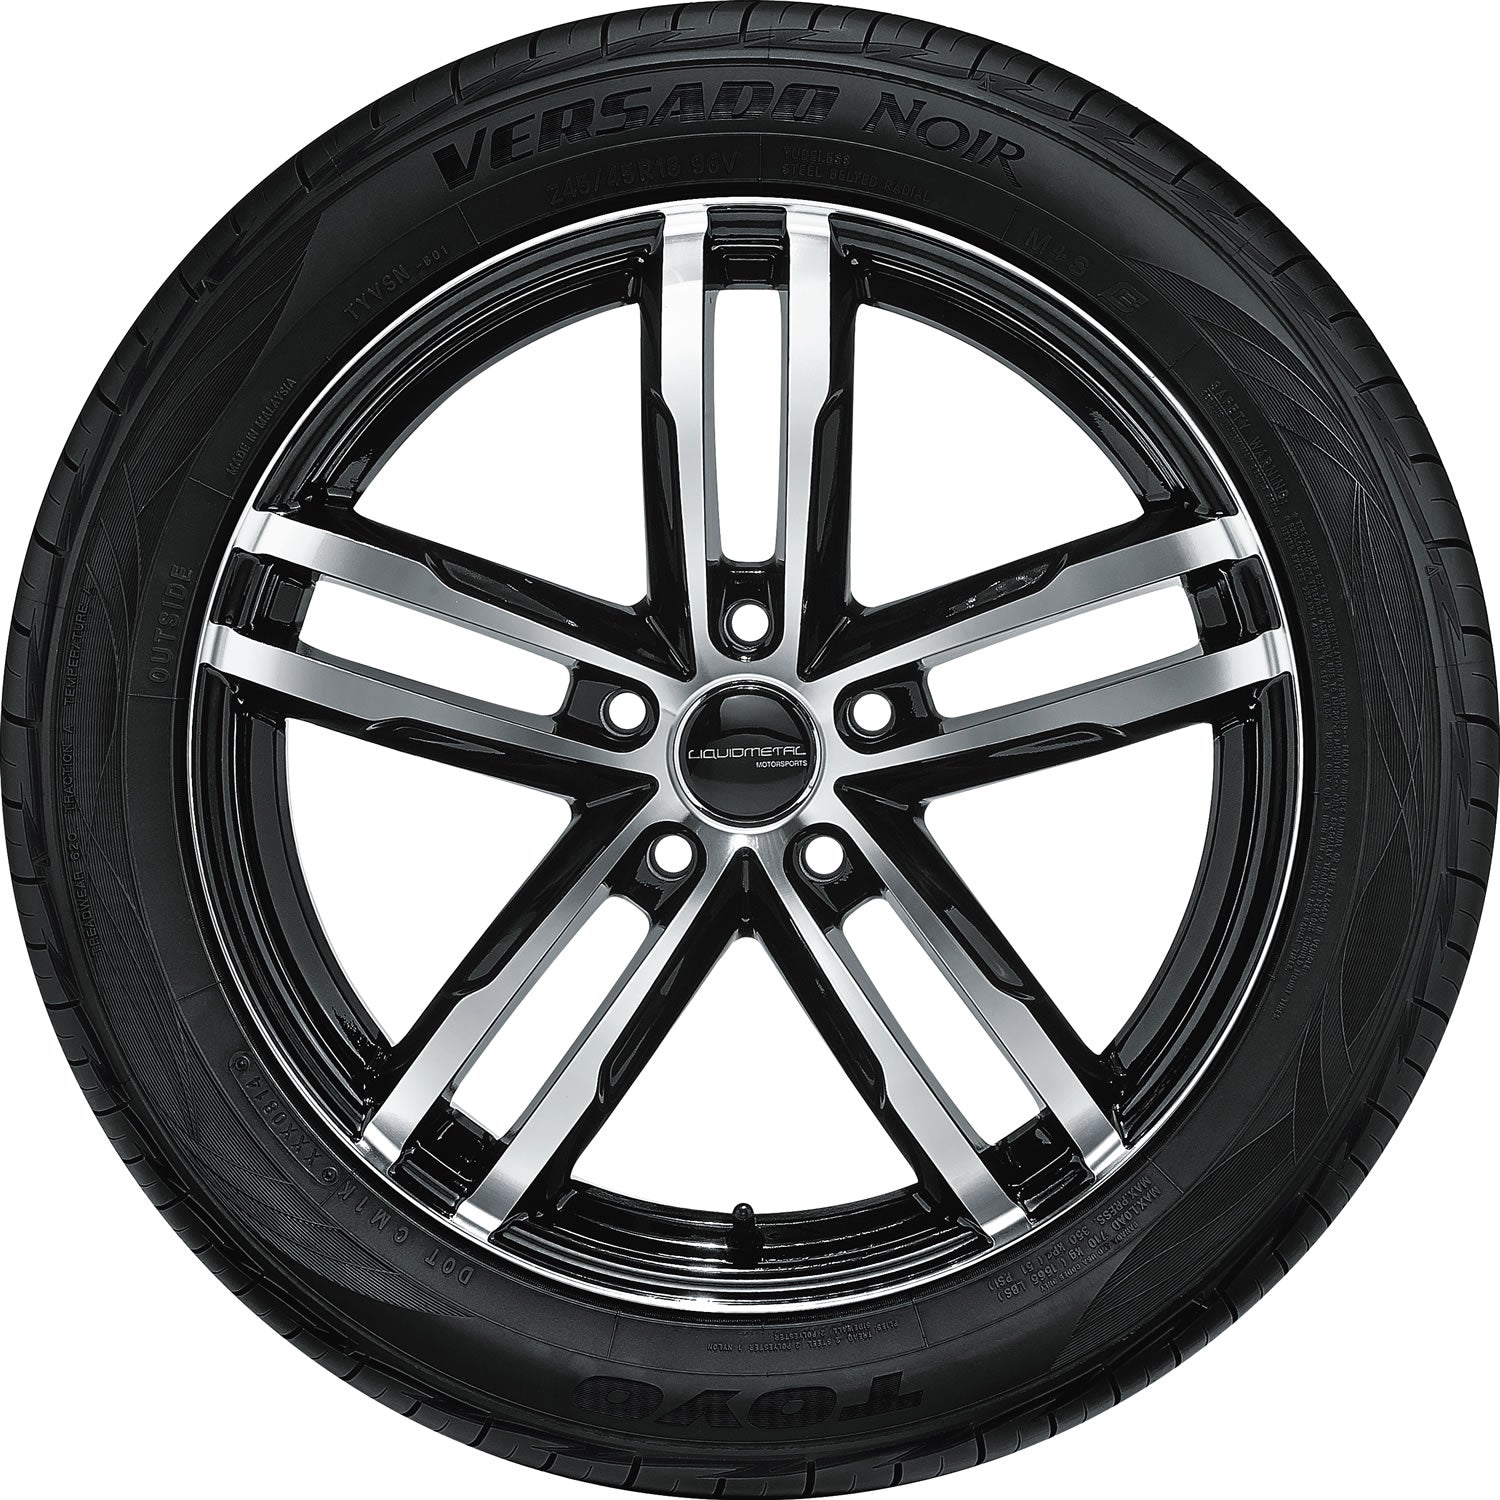 TOYO TIRES VERSADO NOIR 205/55R16 (24.9X8.4R 16) Tires